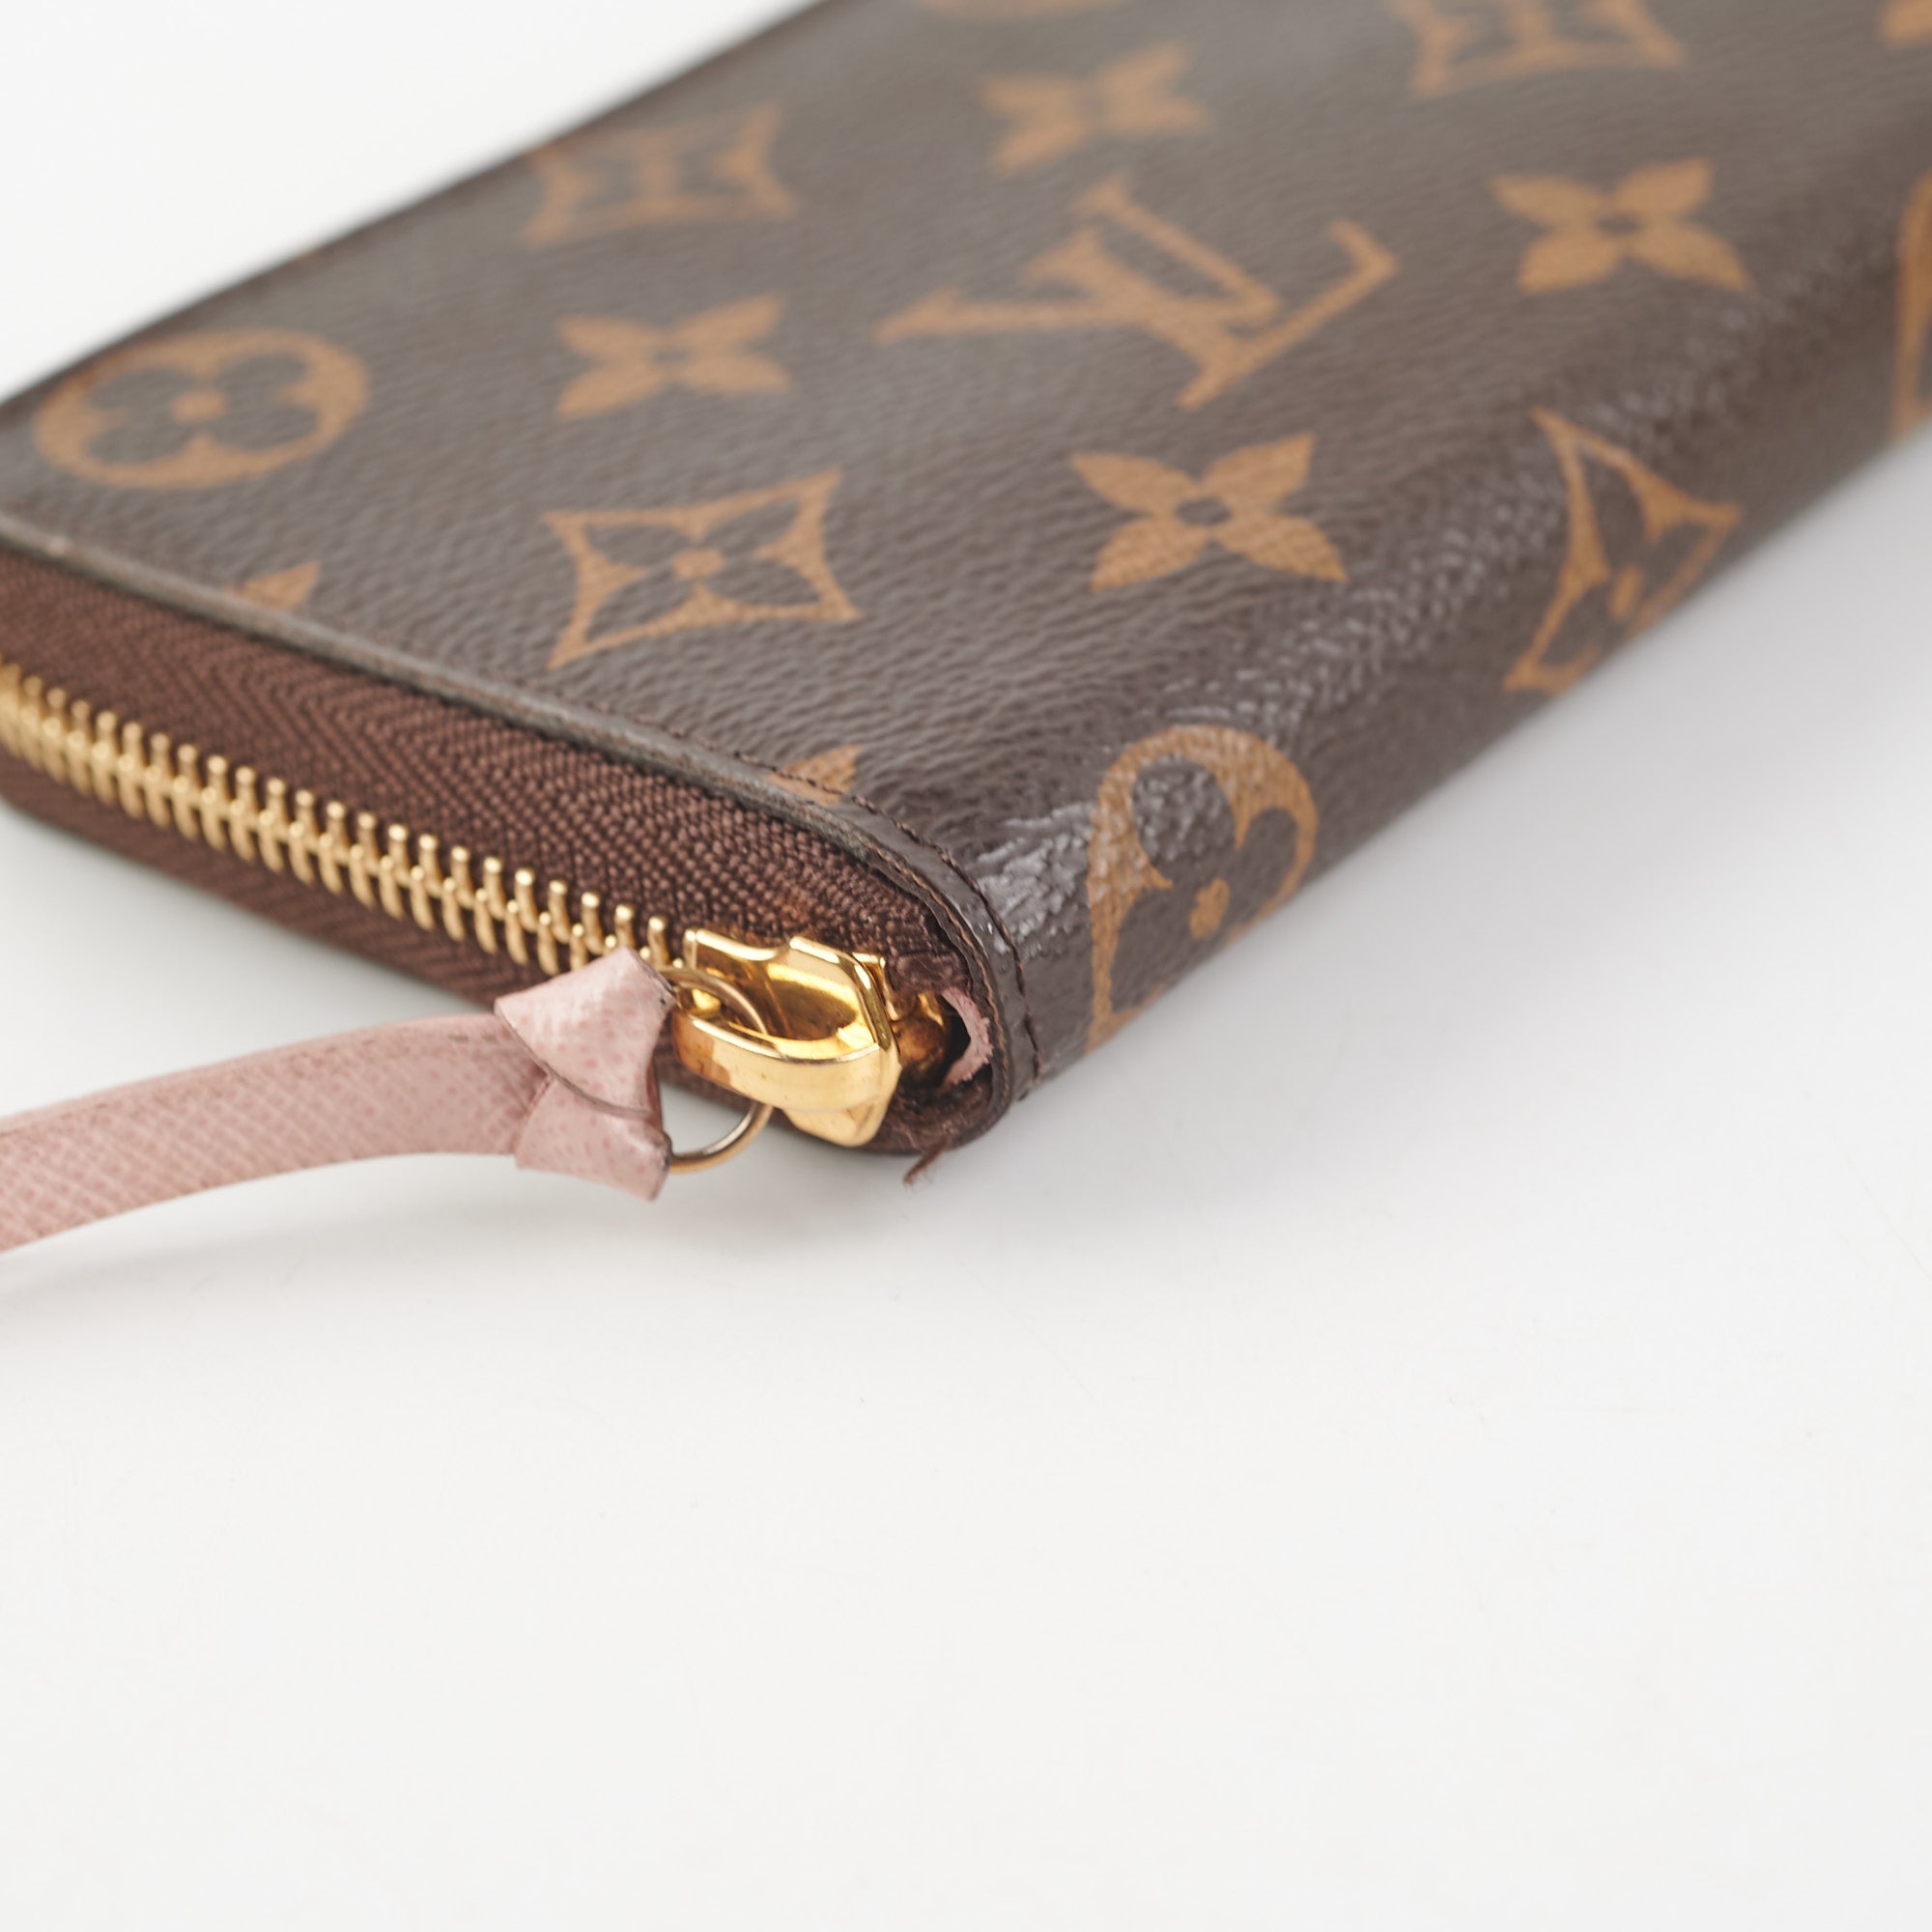 Clemence Wallet Flower Monogram – Keeks Designer Handbags